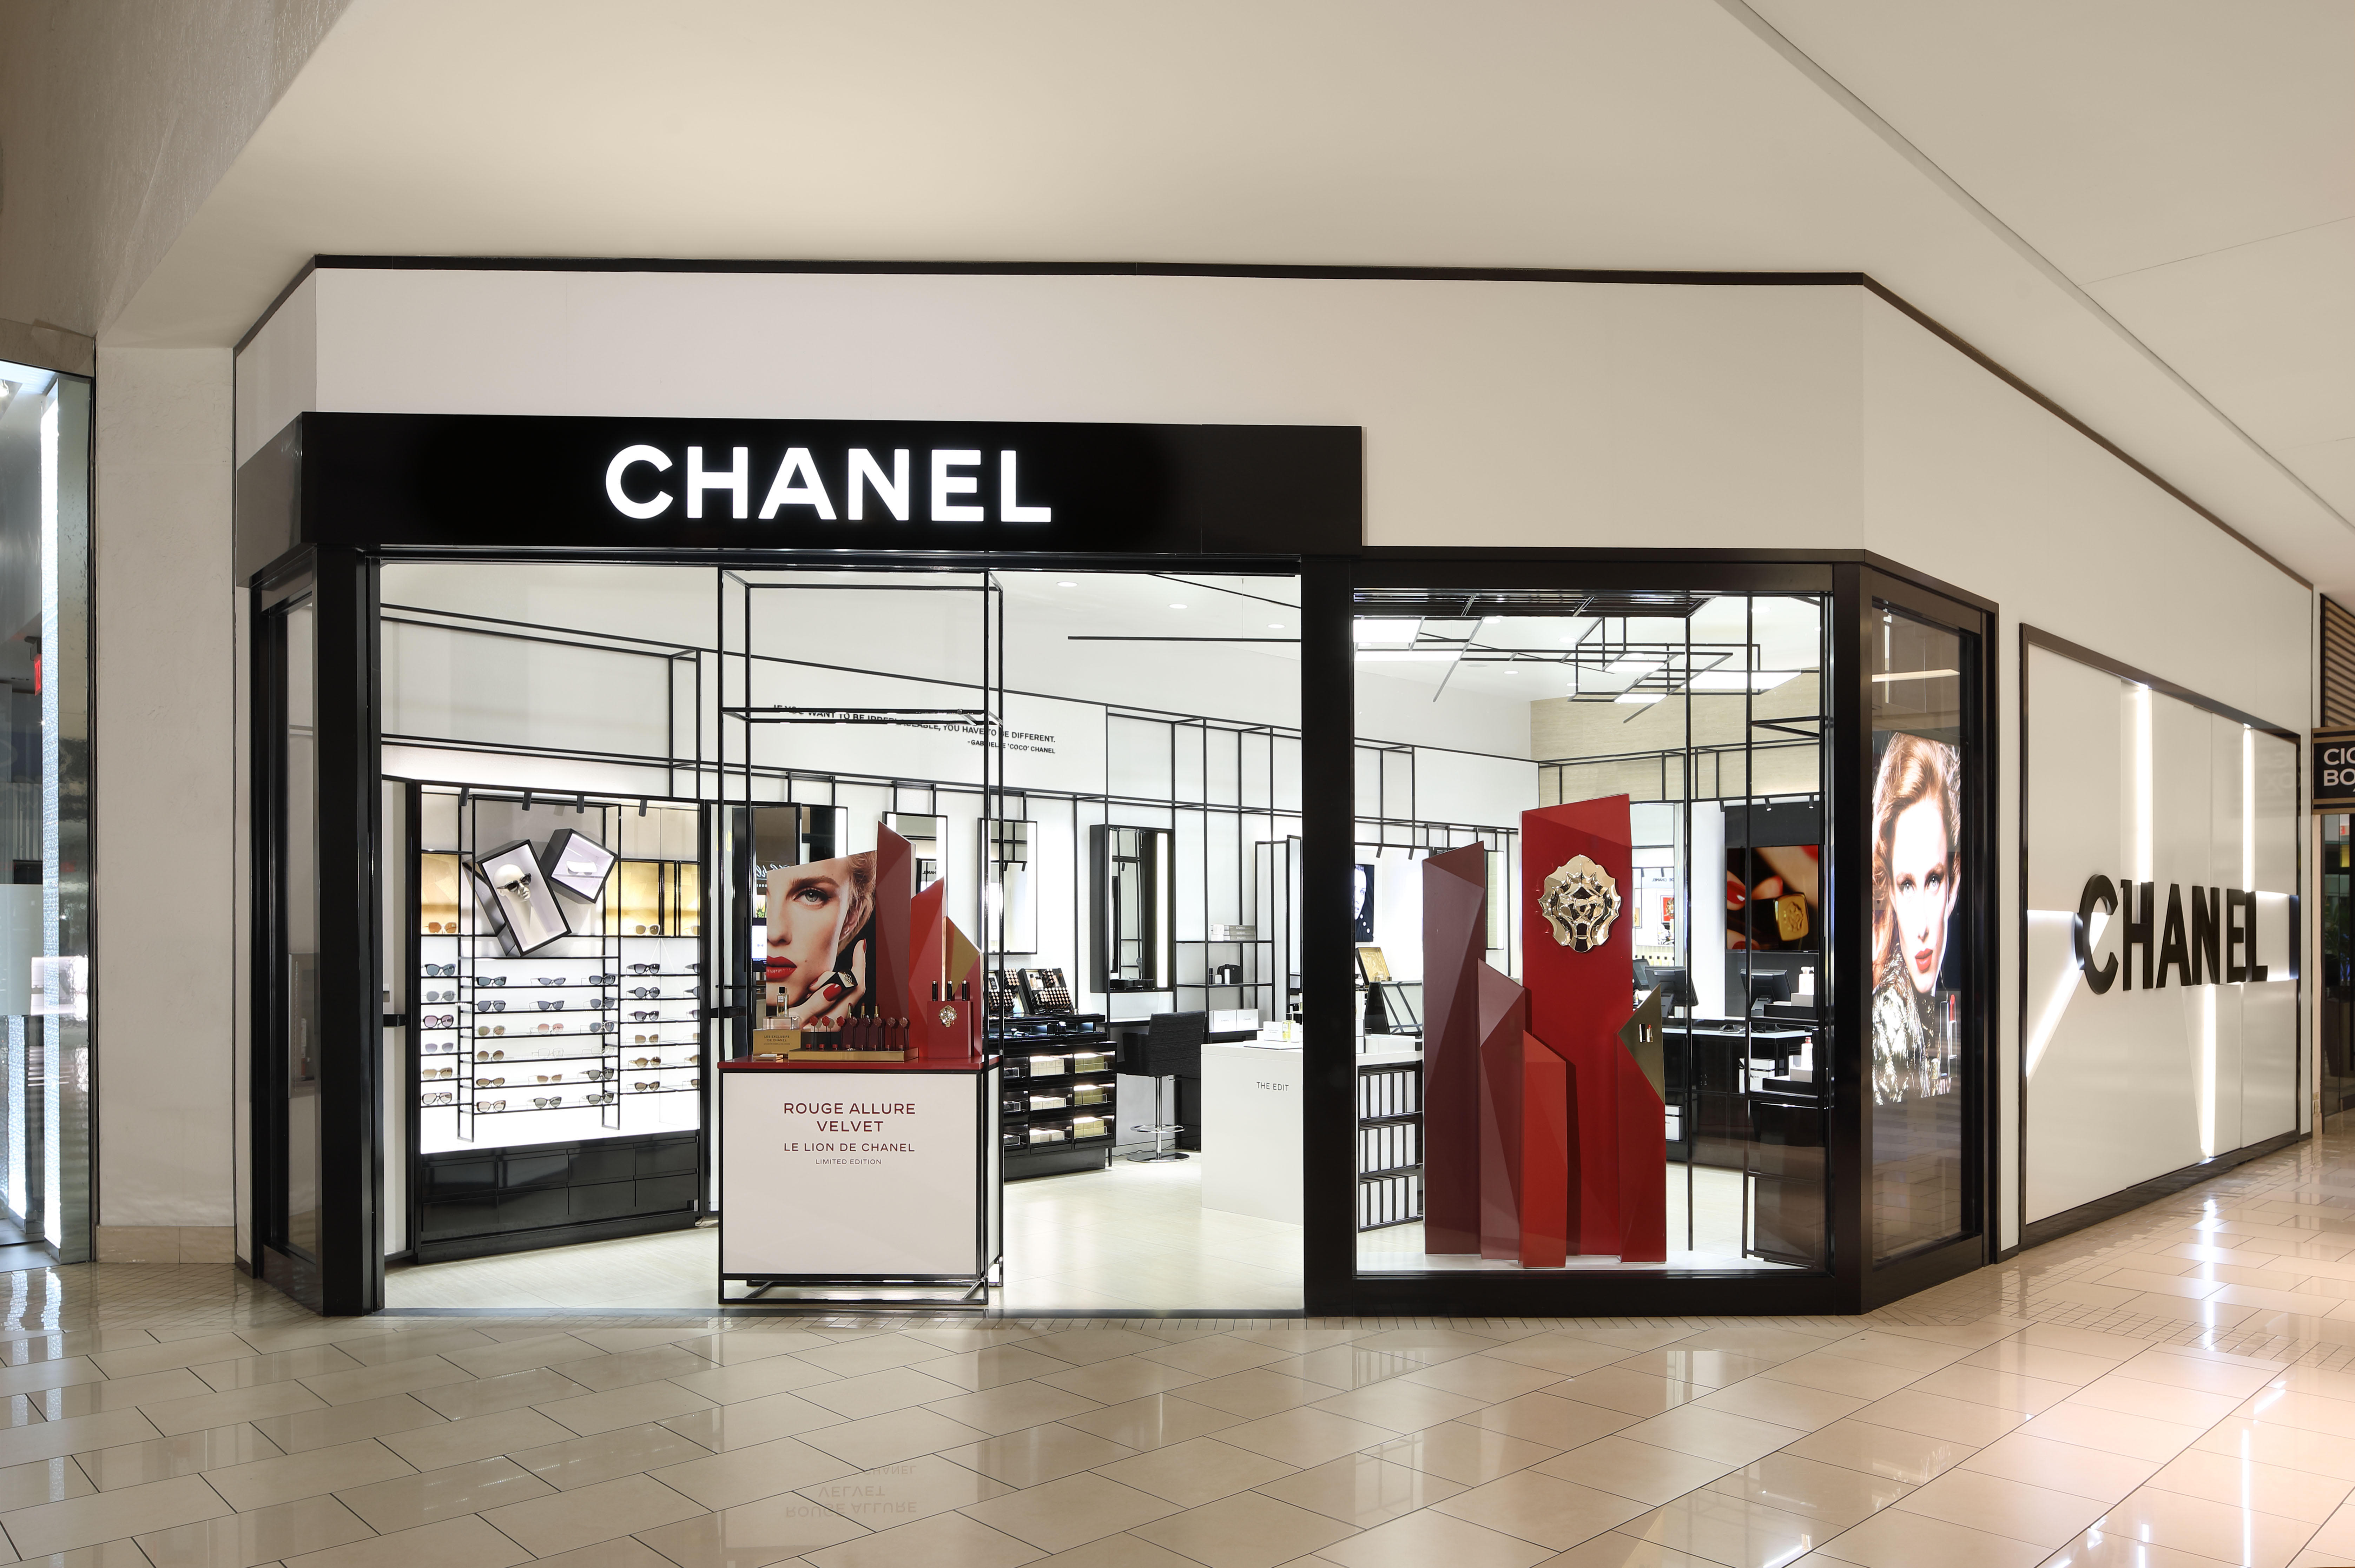 674 Chanel Store Paris Images Stock Photos  Vectors  Shutterstock